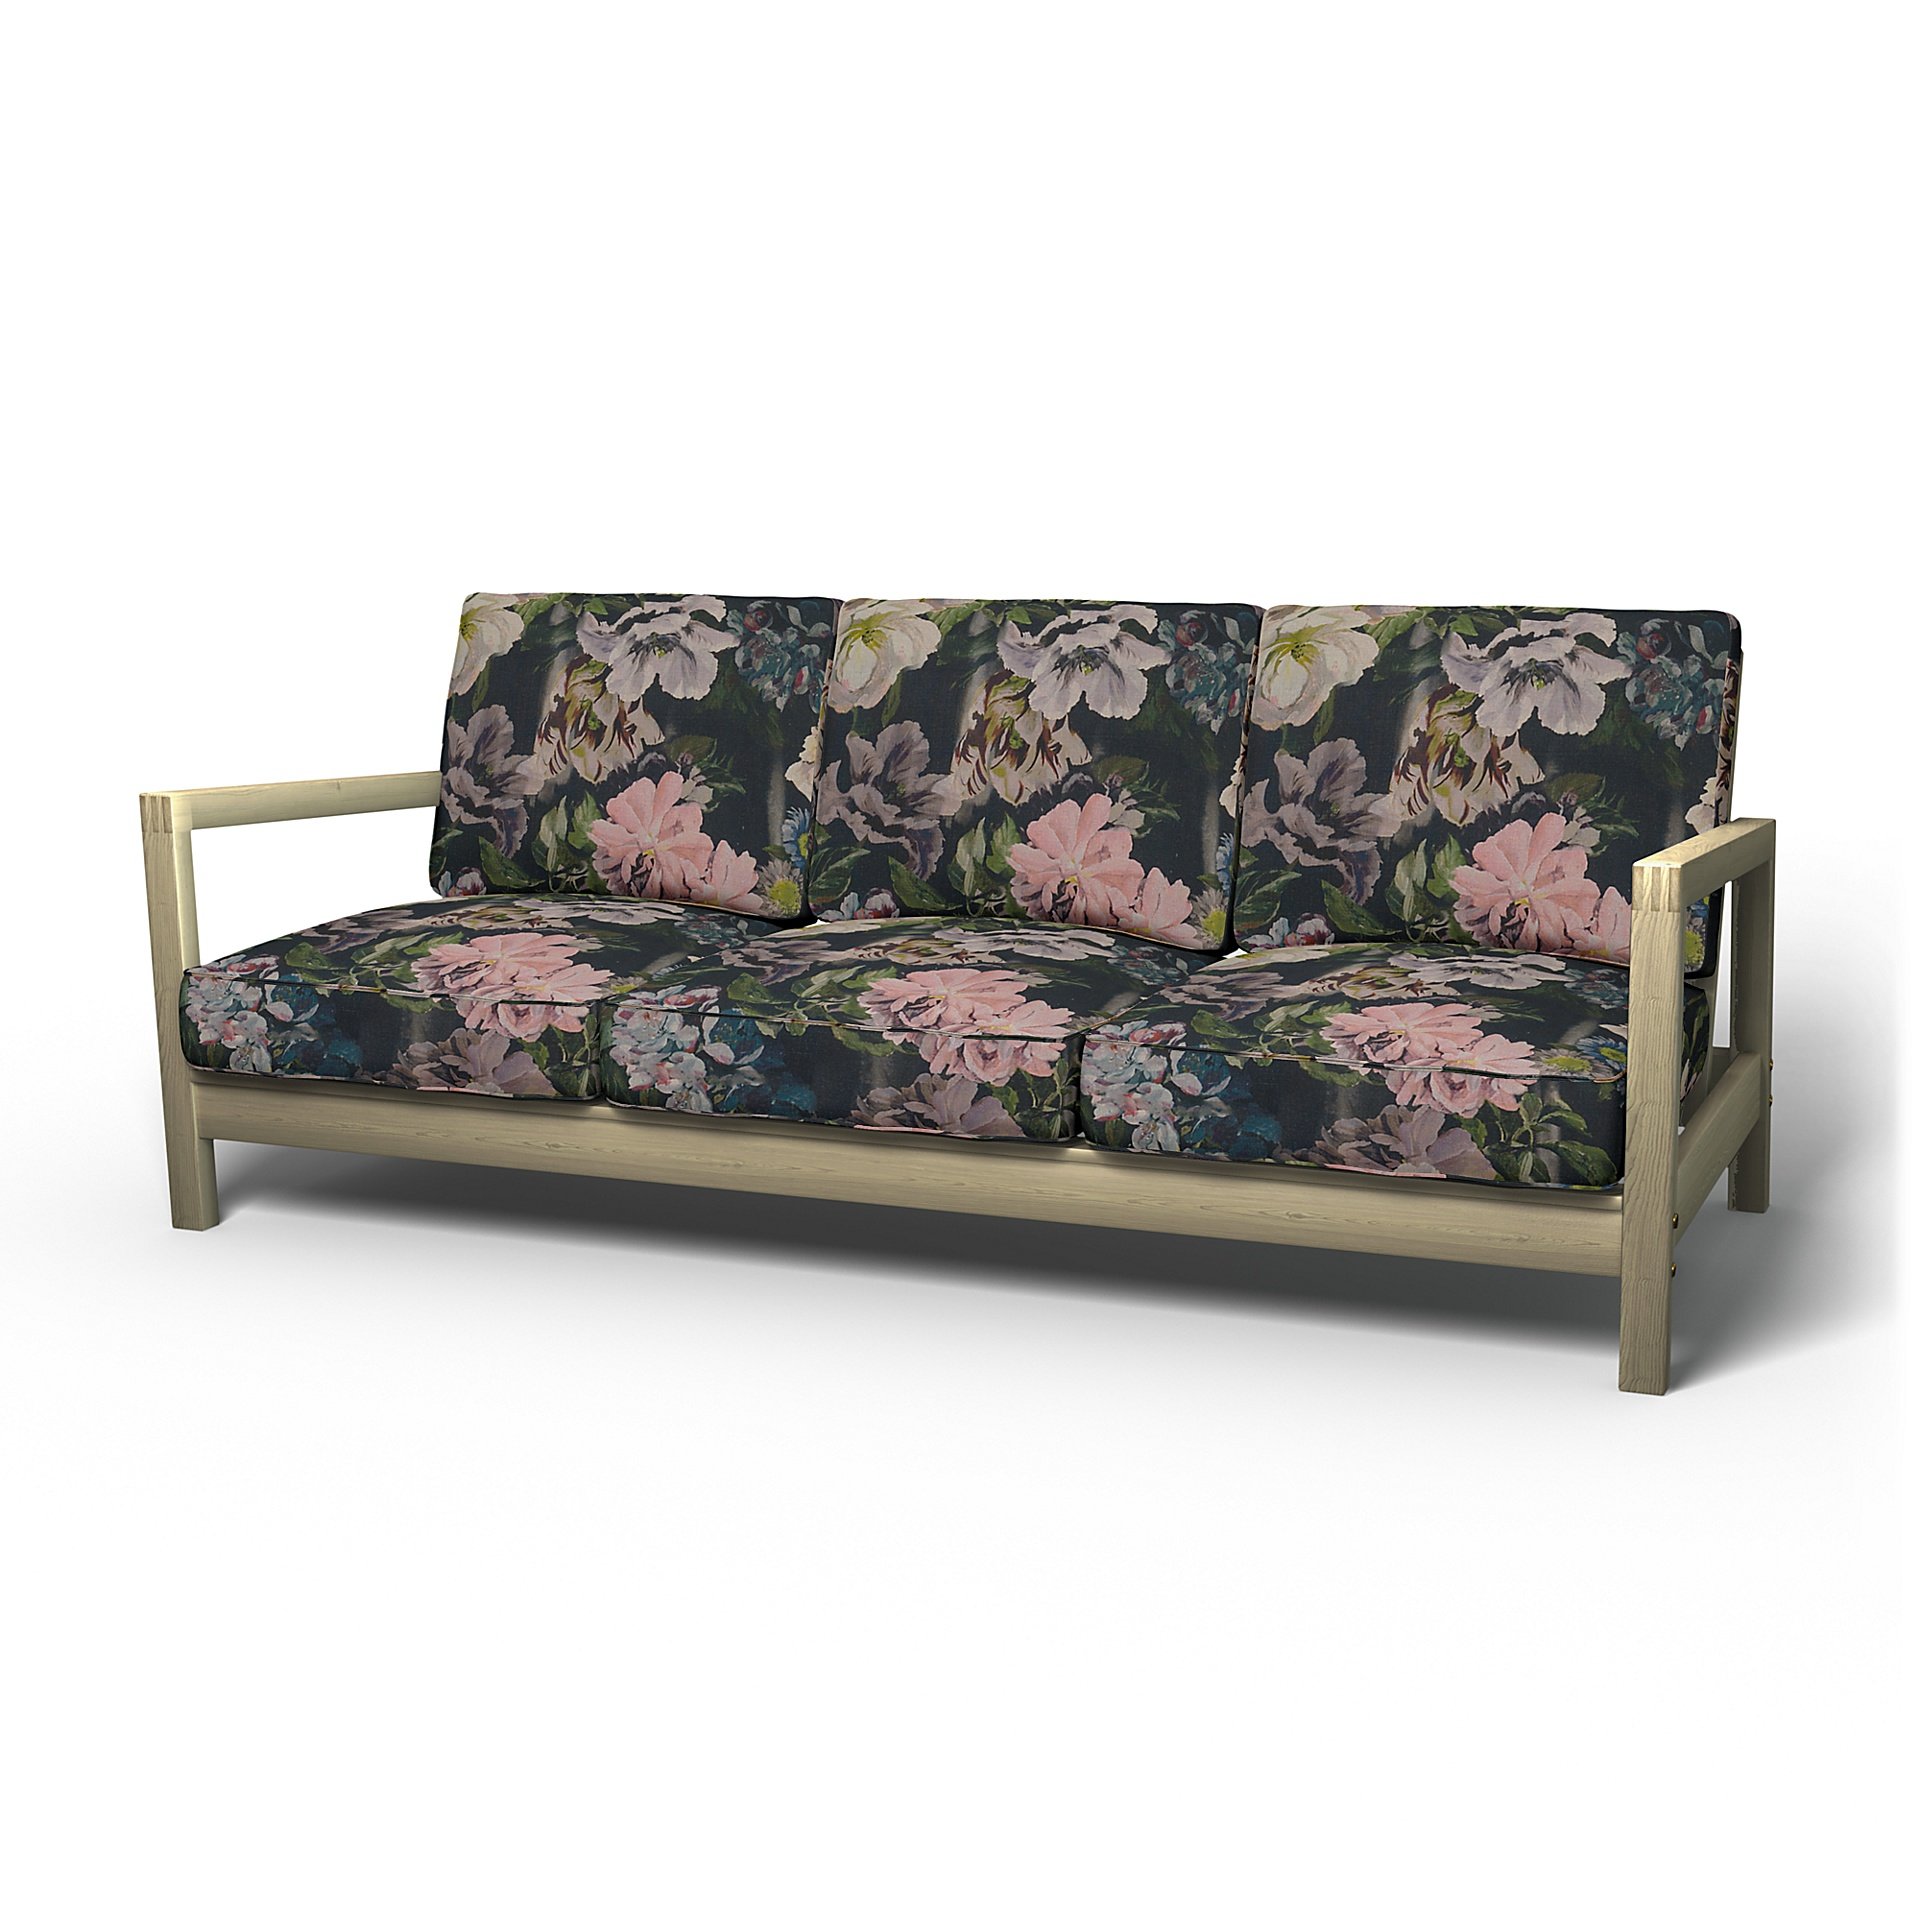 IKEA - Lillberg 3 Seater Sofa Cover, Delft Flower - Graphite, Linen - Bemz